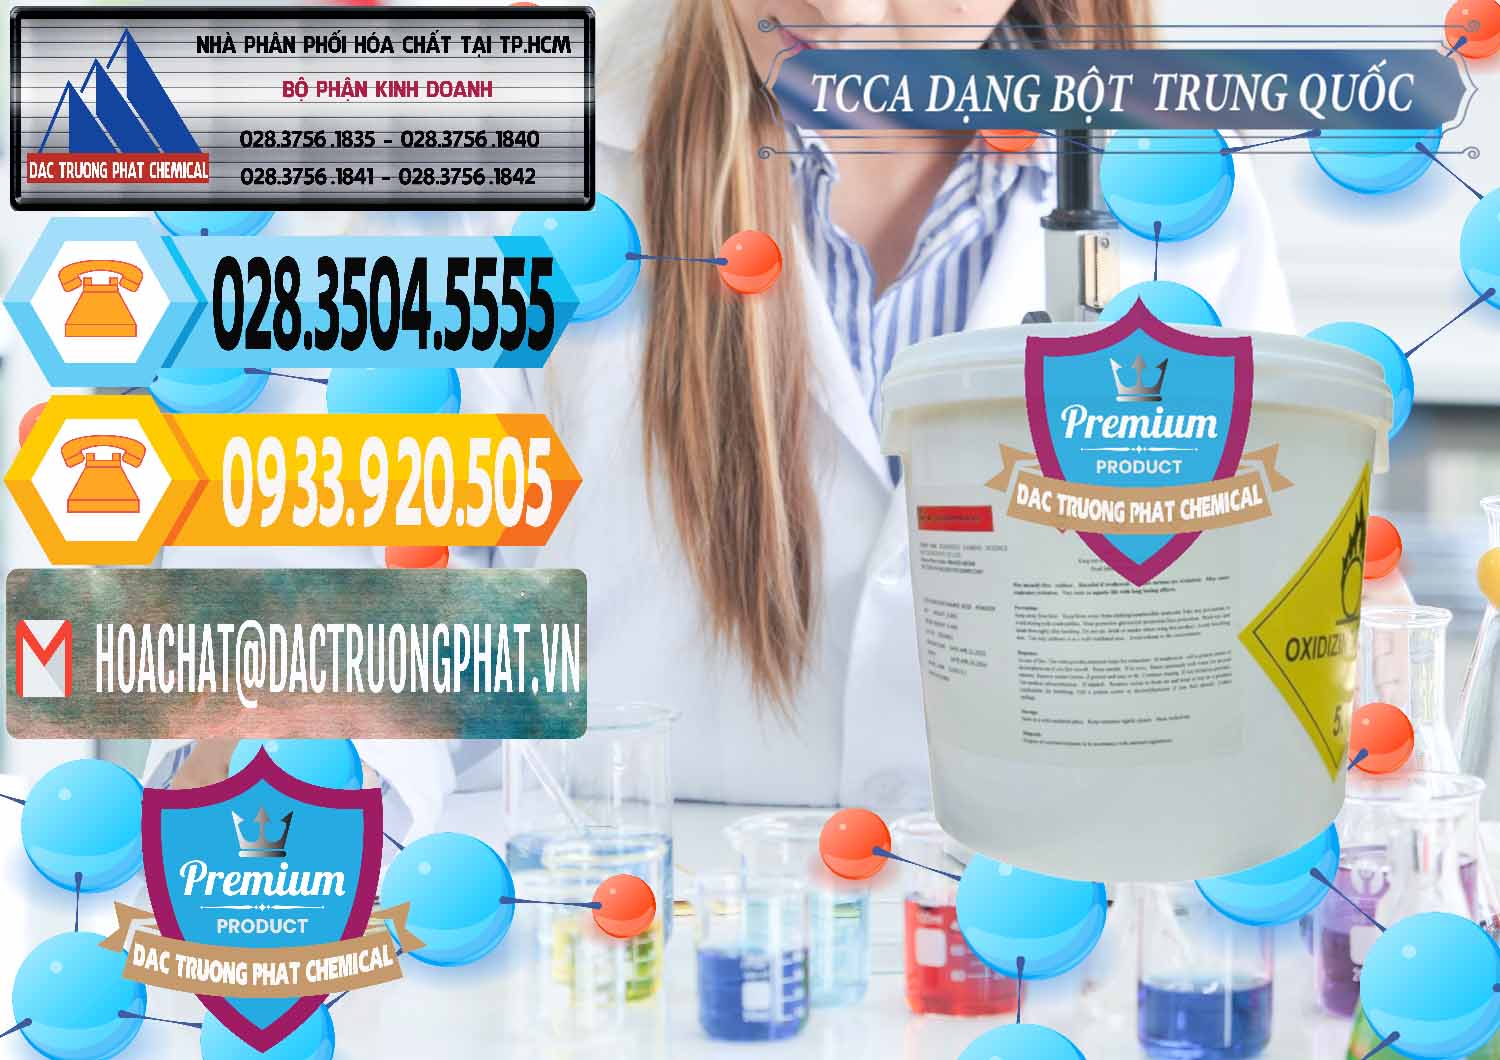 Cty bán và cung cấp TCCA - Acid Trichloroisocyanuric Dạng Bột Thùng 5kg Trung Quốc China - 0378 - Cty chuyên kinh doanh ( cung cấp ) hóa chất tại TP.HCM - hoachattayrua.net